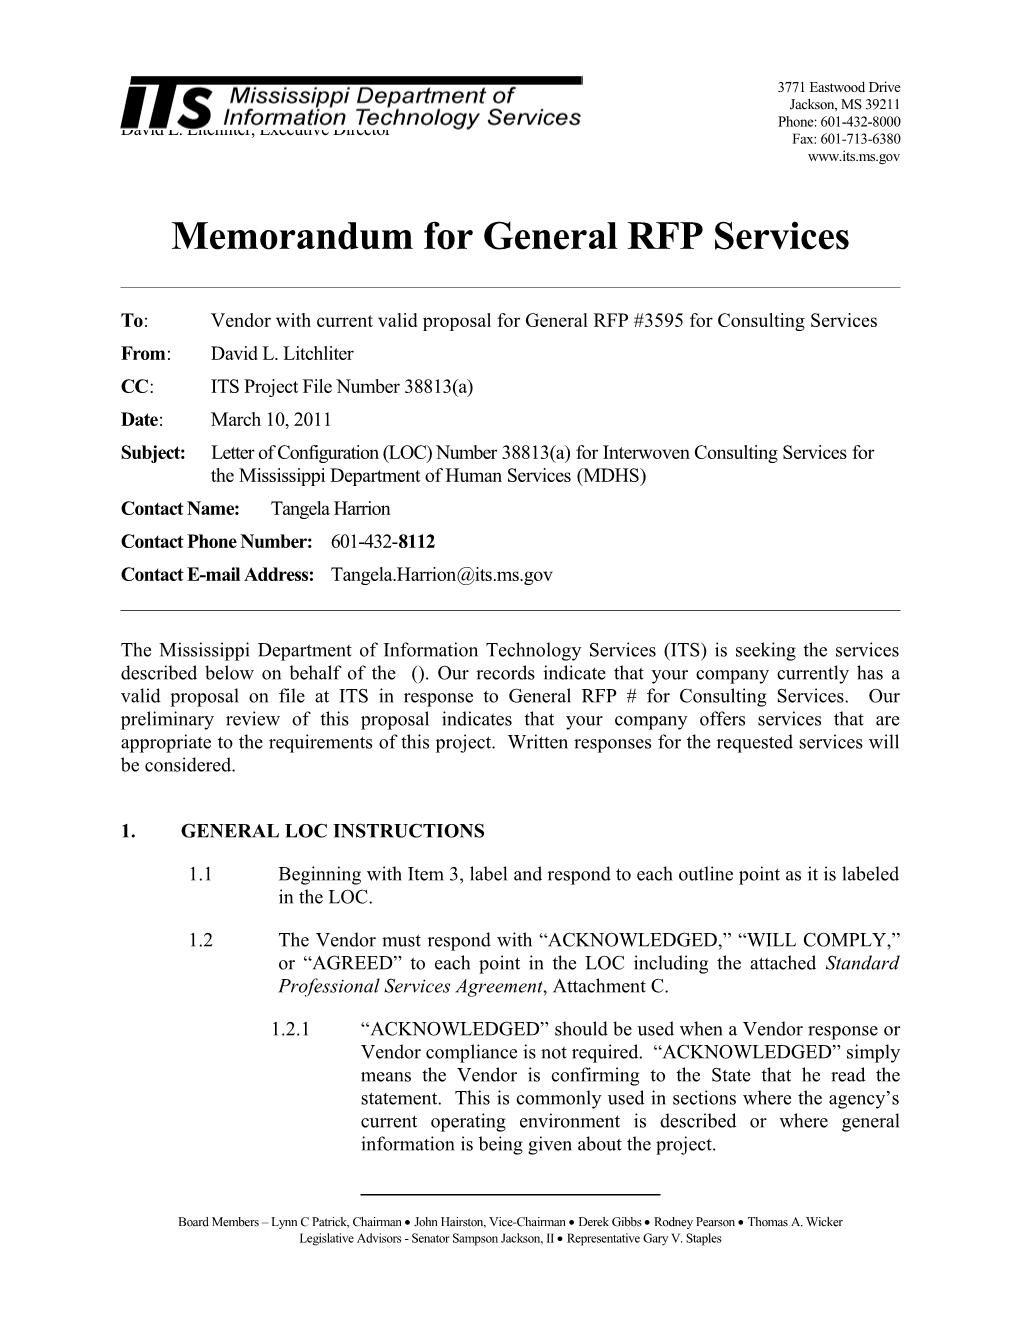 Memorandum for General RFP Configuration s8